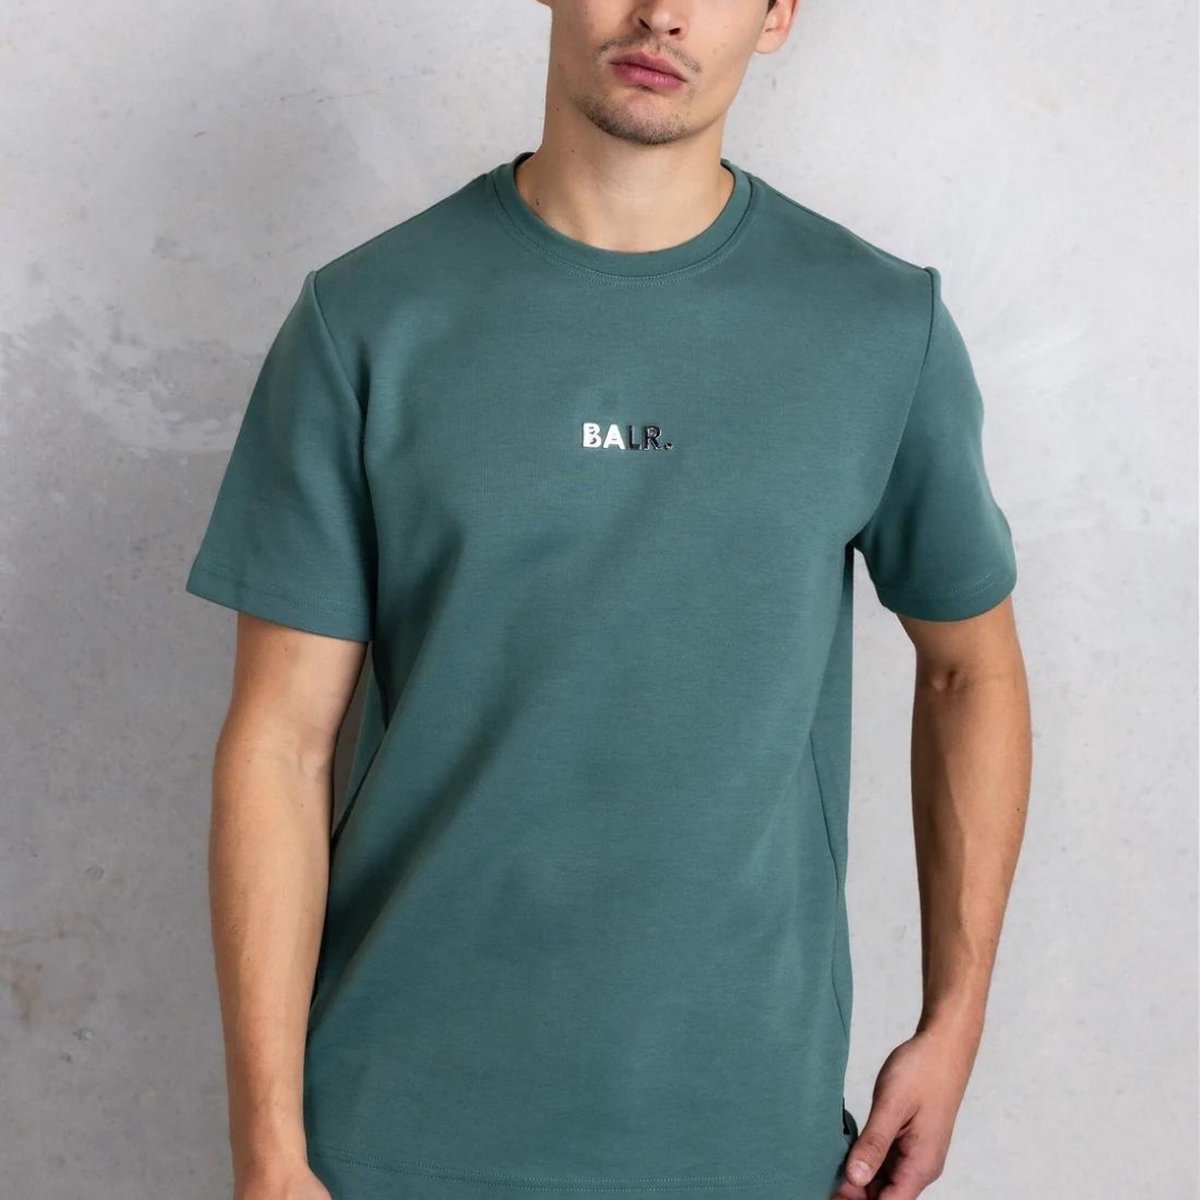 BALR. Shirt Groen maat XL Q-series straight t-shirts groen